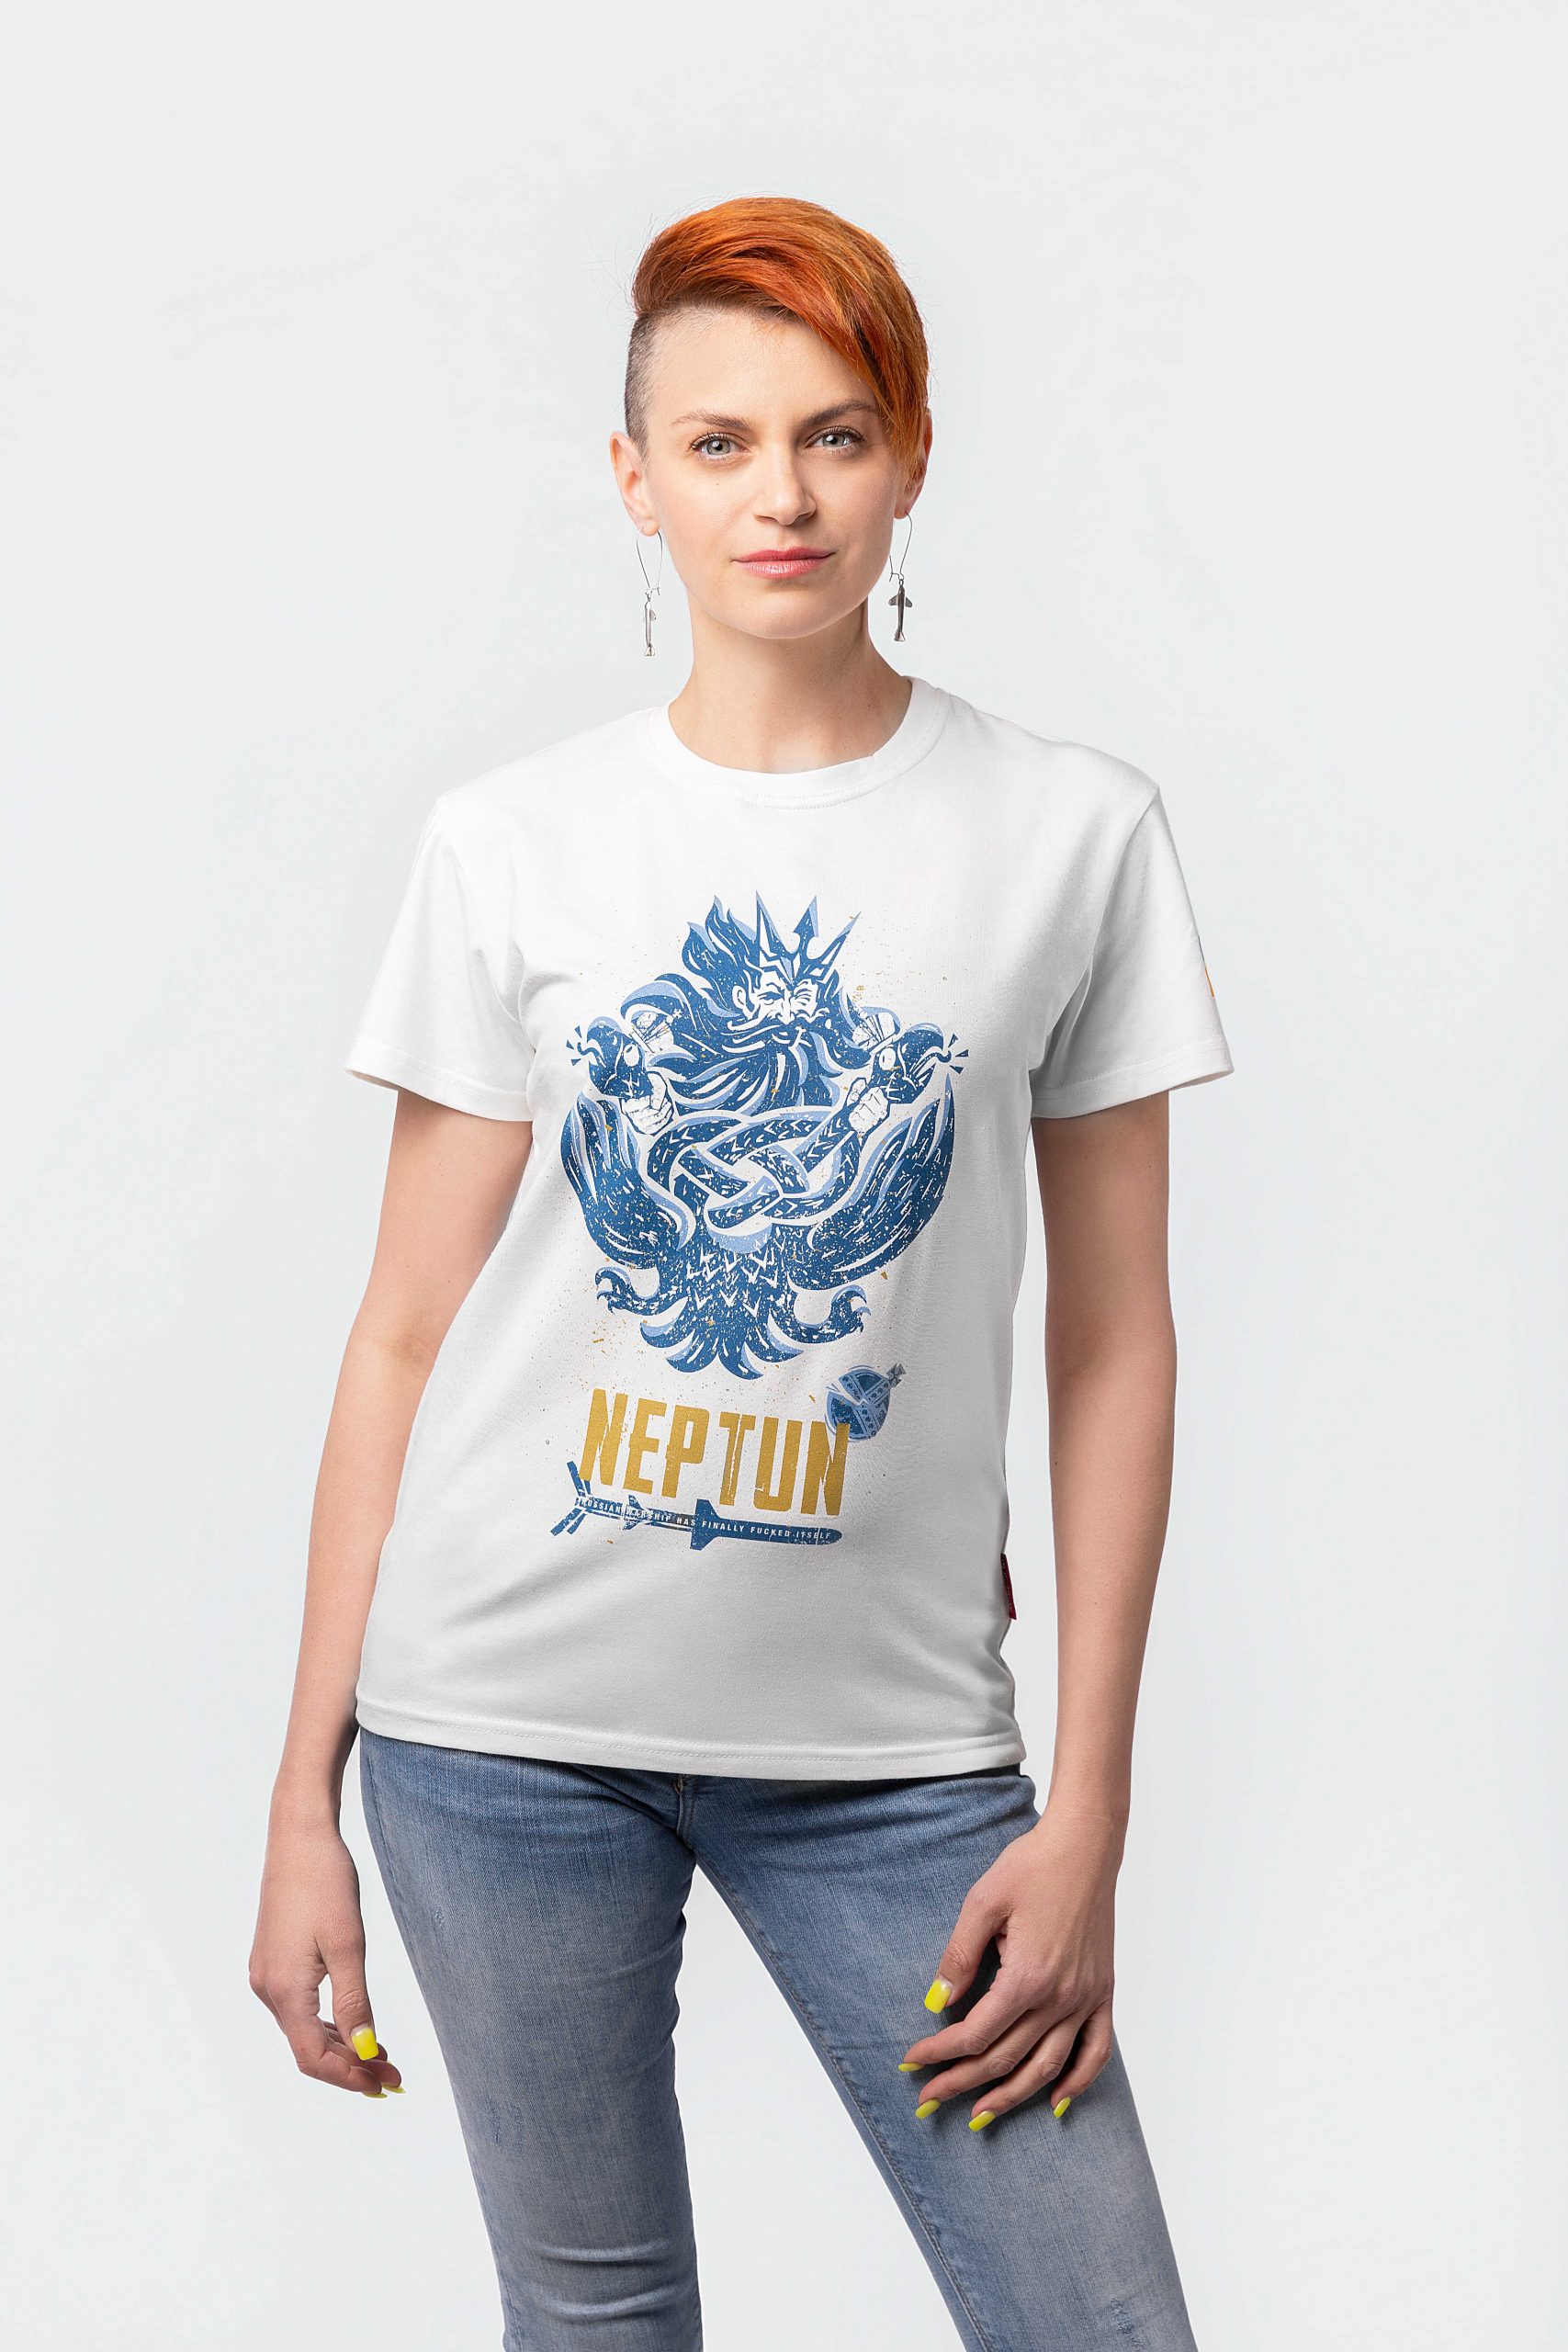 Women's T-Shirt Neptune. Color off-white. .